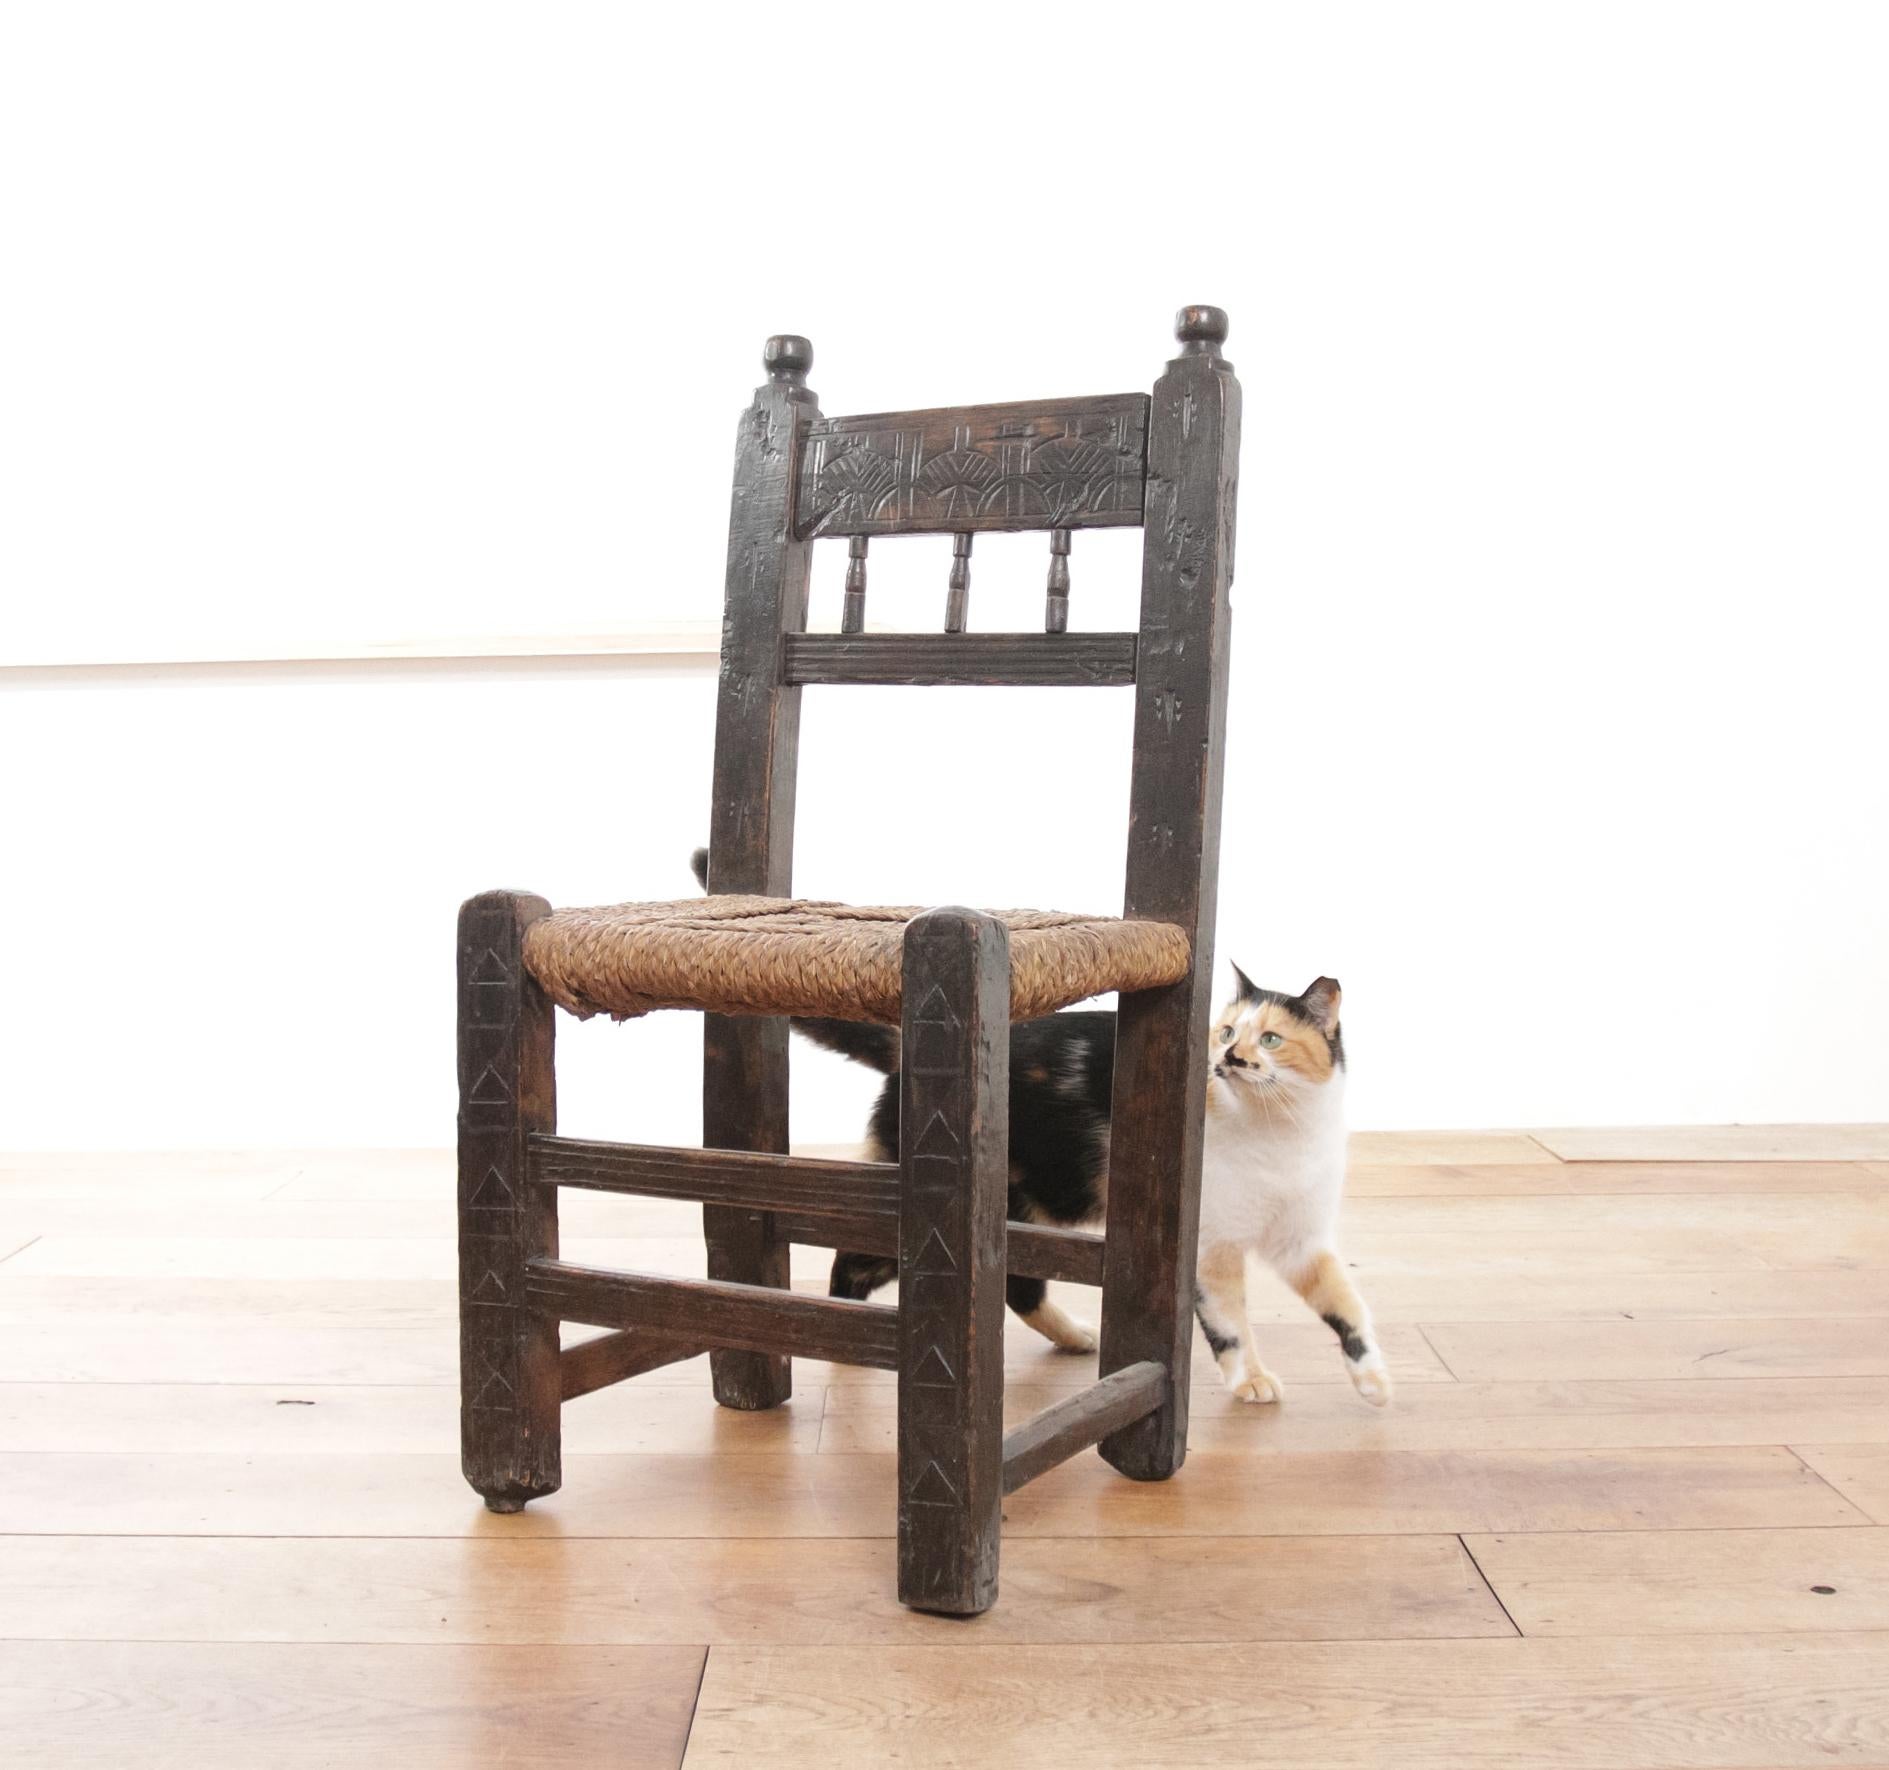 Acquérez un fragment d'élégance pastorale avec cette chaise de fermier originale du XVIIe siècle, un trésor orné de motifs sculptés à la main qui s'intègre parfaitement à un intérieur de style minimaliste ou wabi-sabi. Cette chaise, qui fait honneur